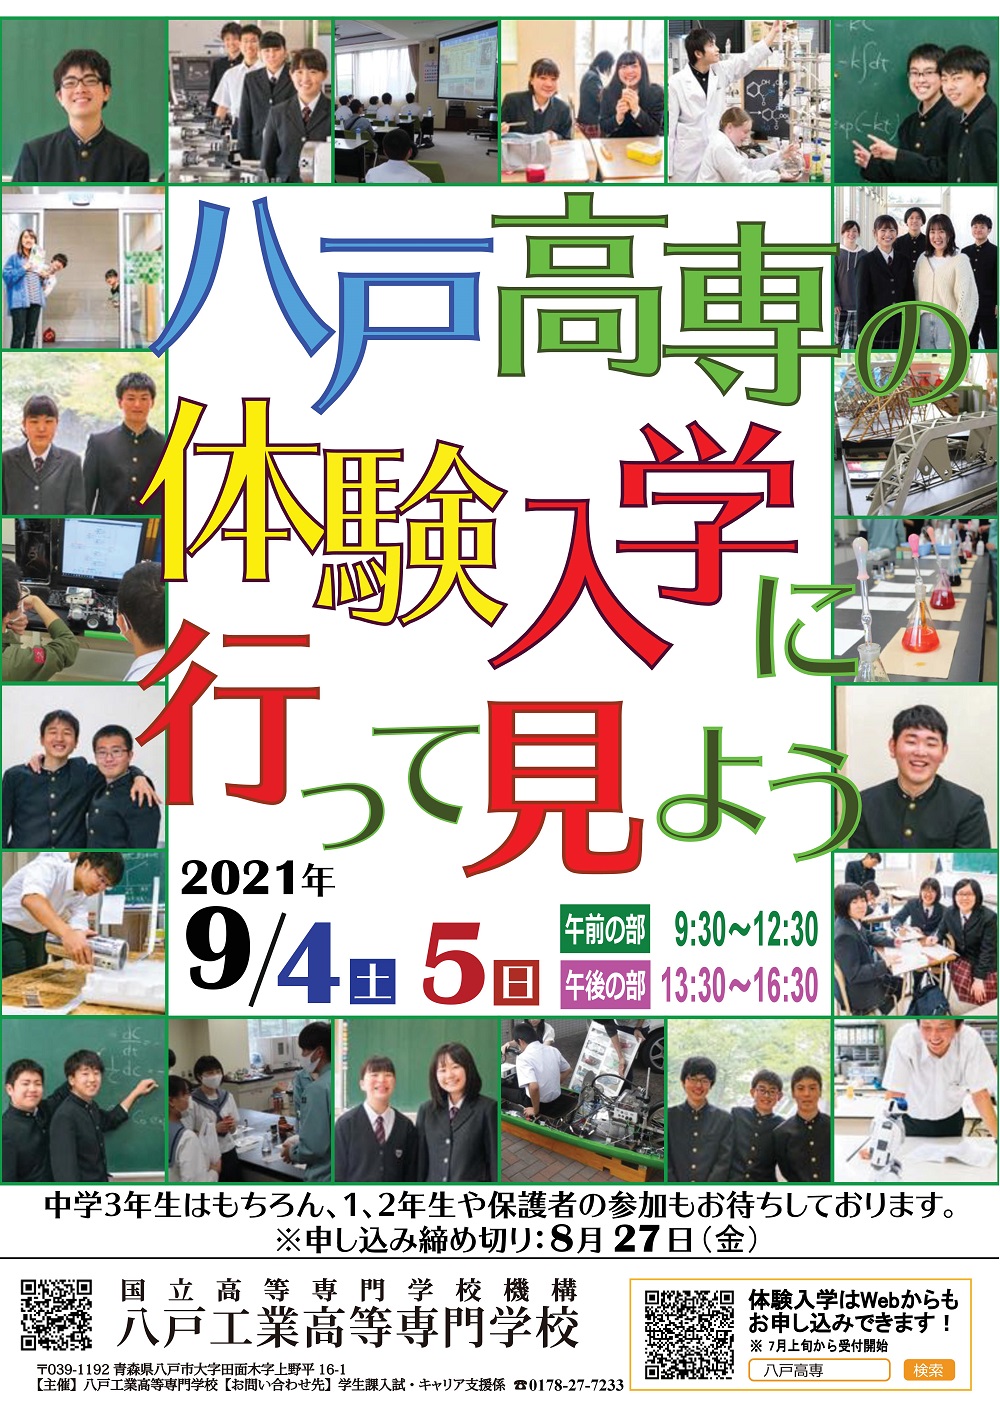 【9/4・9/5】八戸高専 体験入学 開催